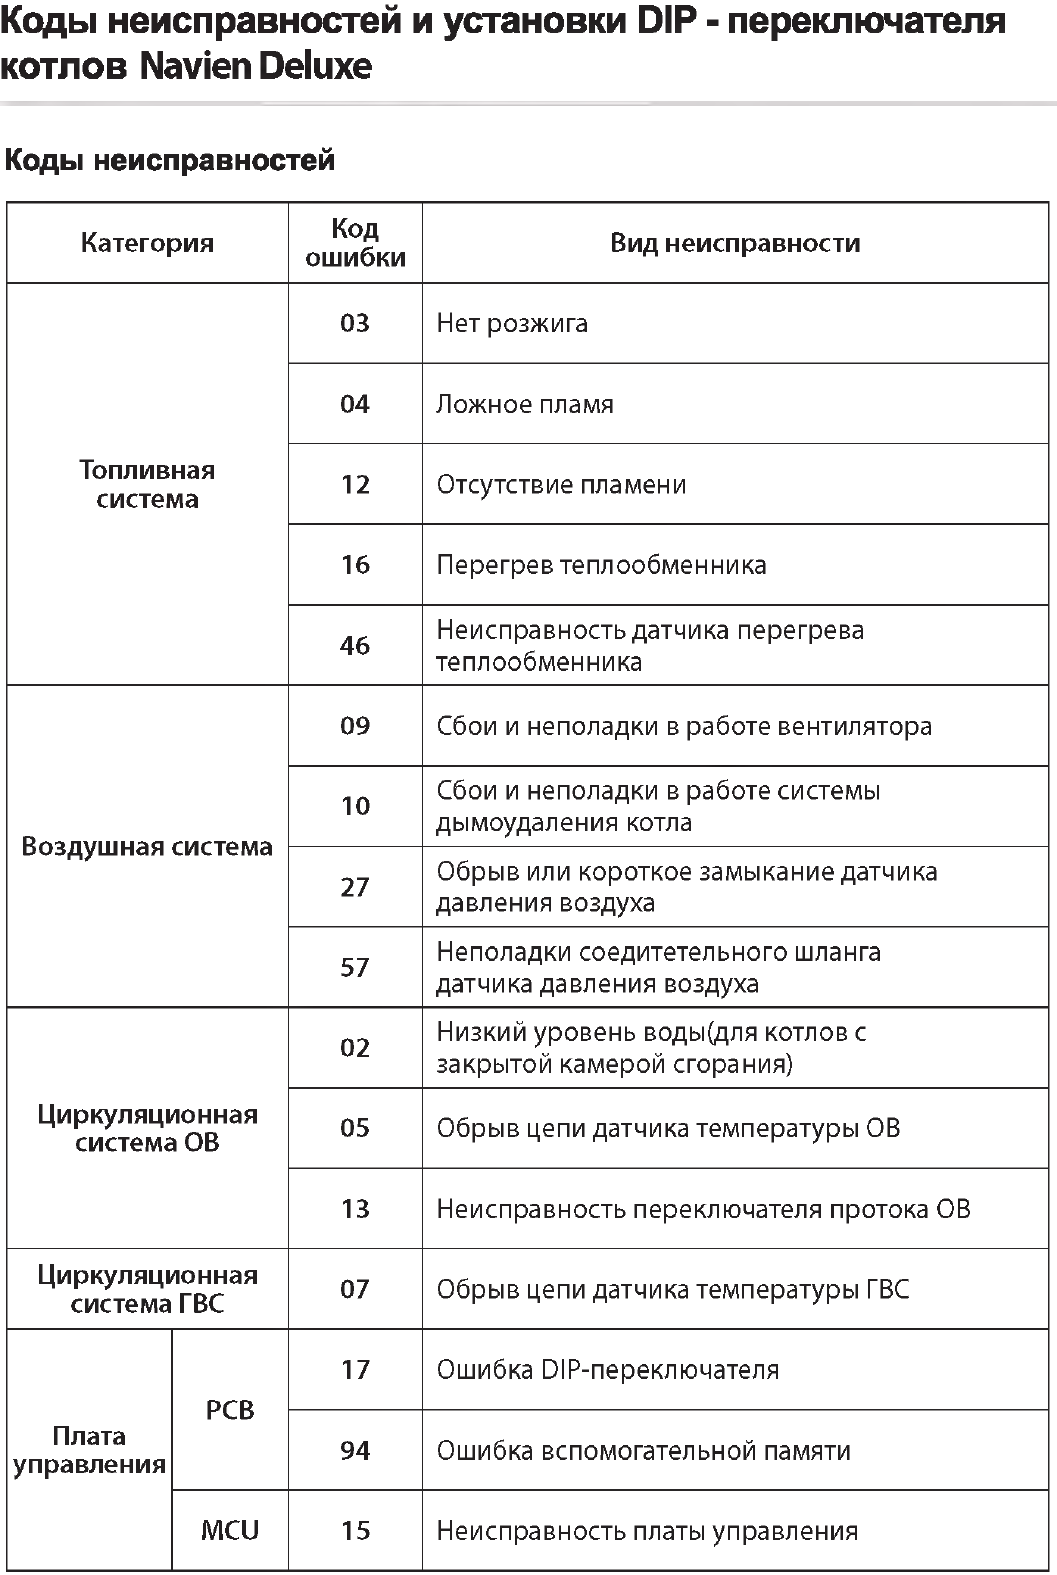 Как устранить ошибку 09 газового котла navien [навьен] - fixbroken.ru